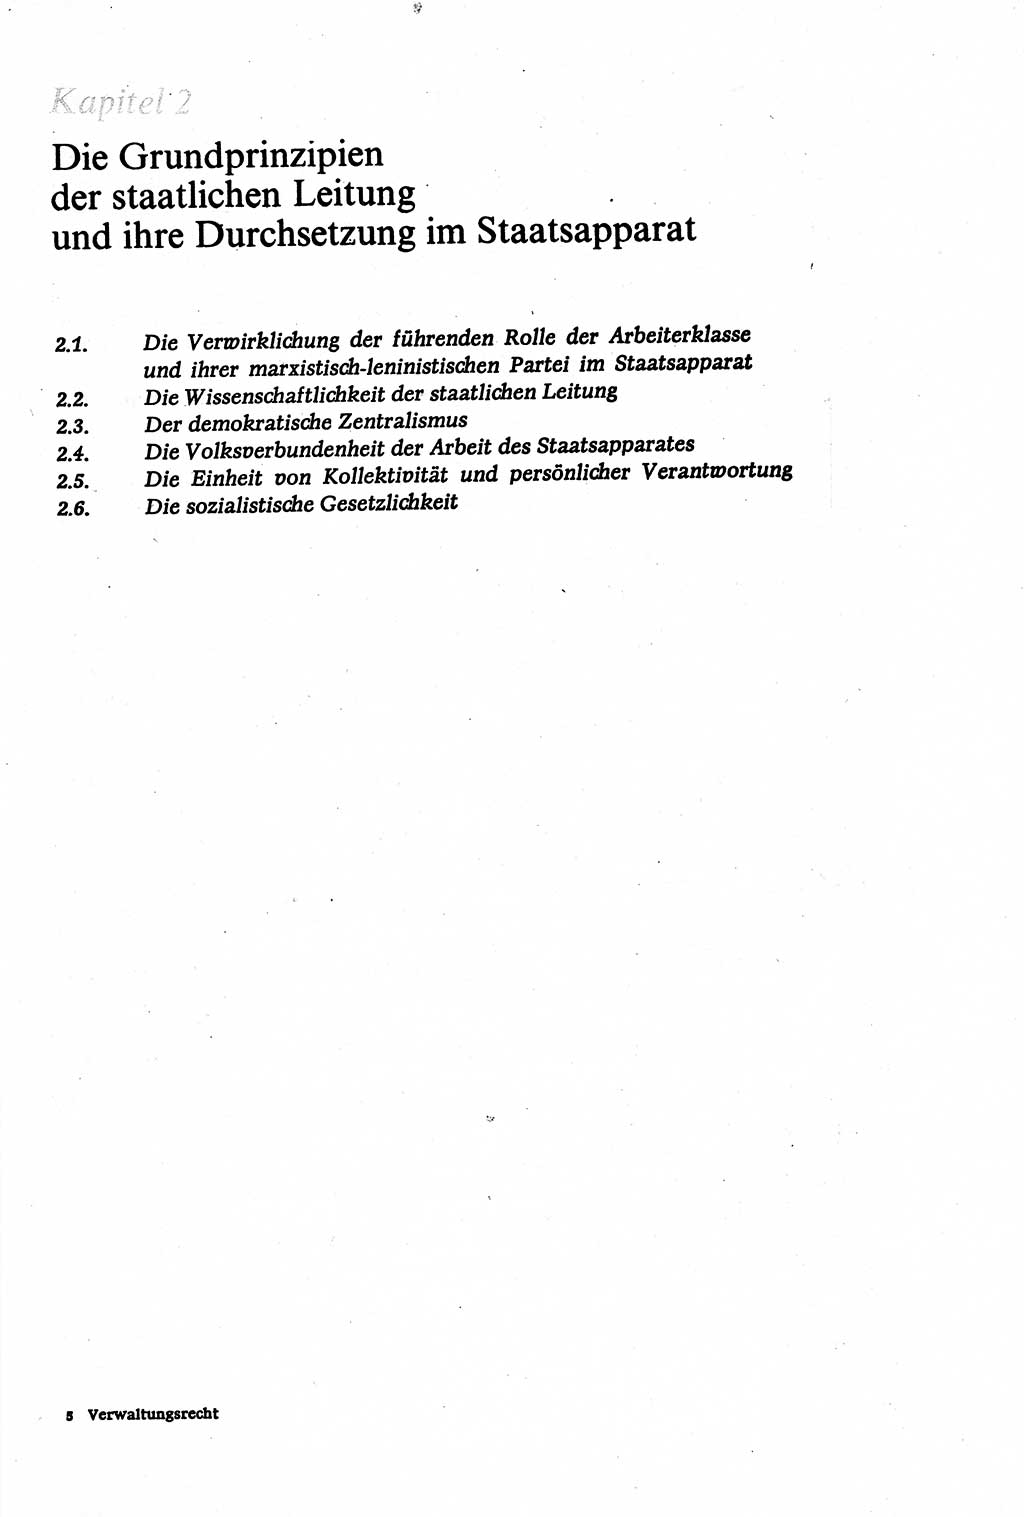 Verwaltungsrecht [Deutsche Demokratische Republik (DDR)], Lehrbuch 1979, Seite 65 (Verw.-R. DDR Lb. 1979, S. 65)